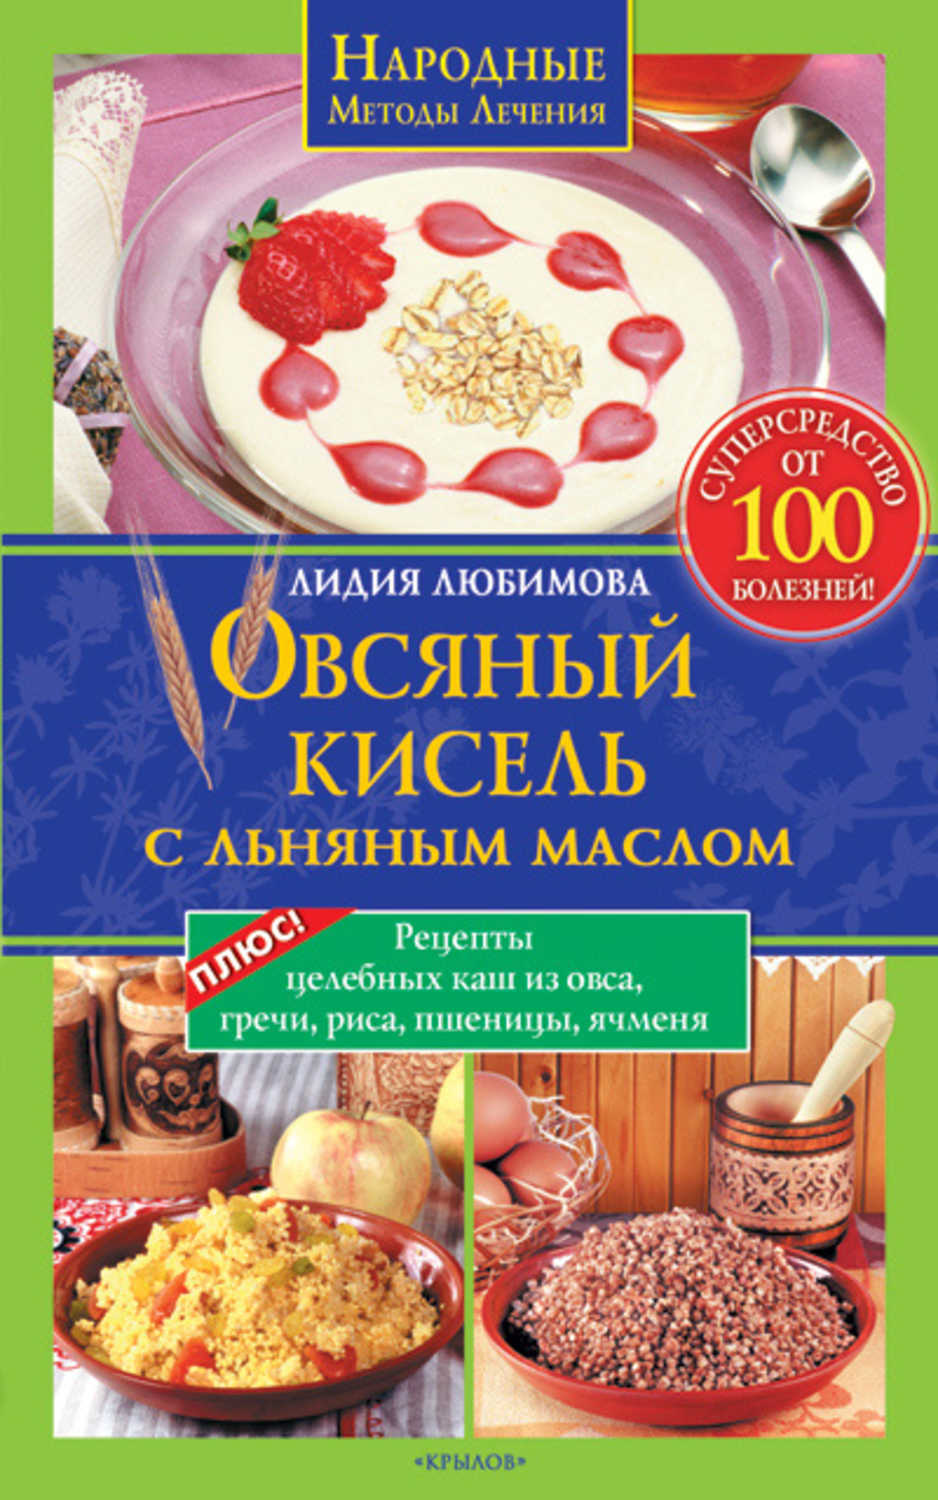 Любимова Лидия Сергеевна - «Овсяный кисель с льняным маслом – суперсредство от 100 болезней. Рецепты целебных каш из овса, гречи, риса, пшеницы, ячменя»